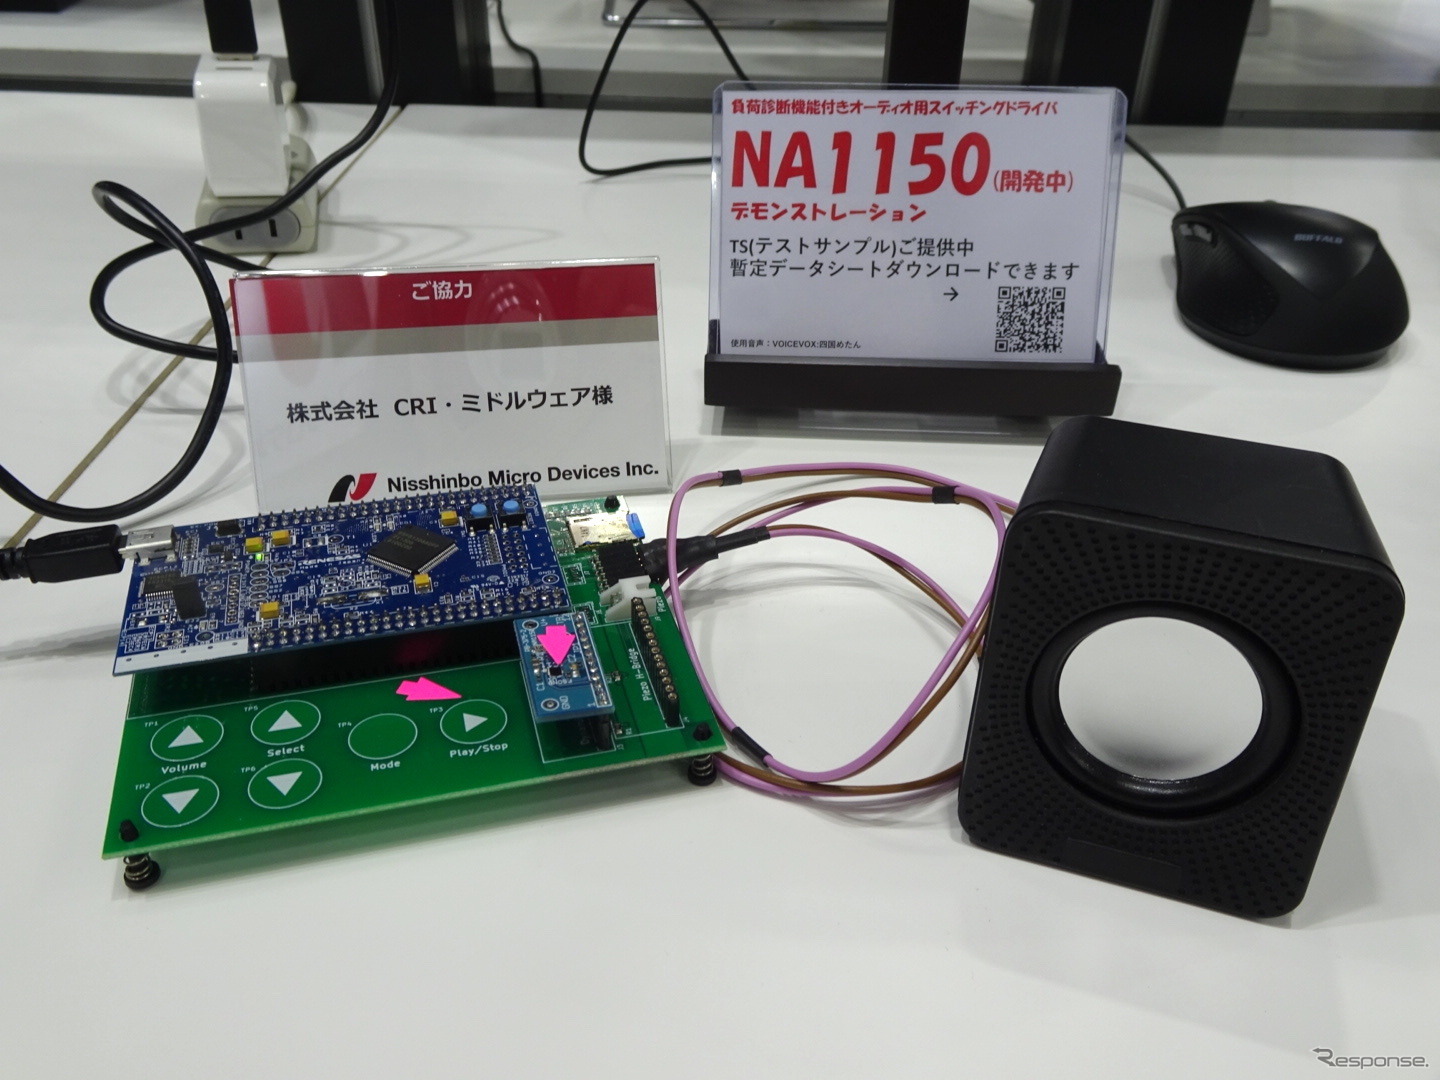 日清紡マイクロデバイスが開発中のマイコン音声再生システム用オーディオアンプ（スイッチングドライバ）「NA1150」